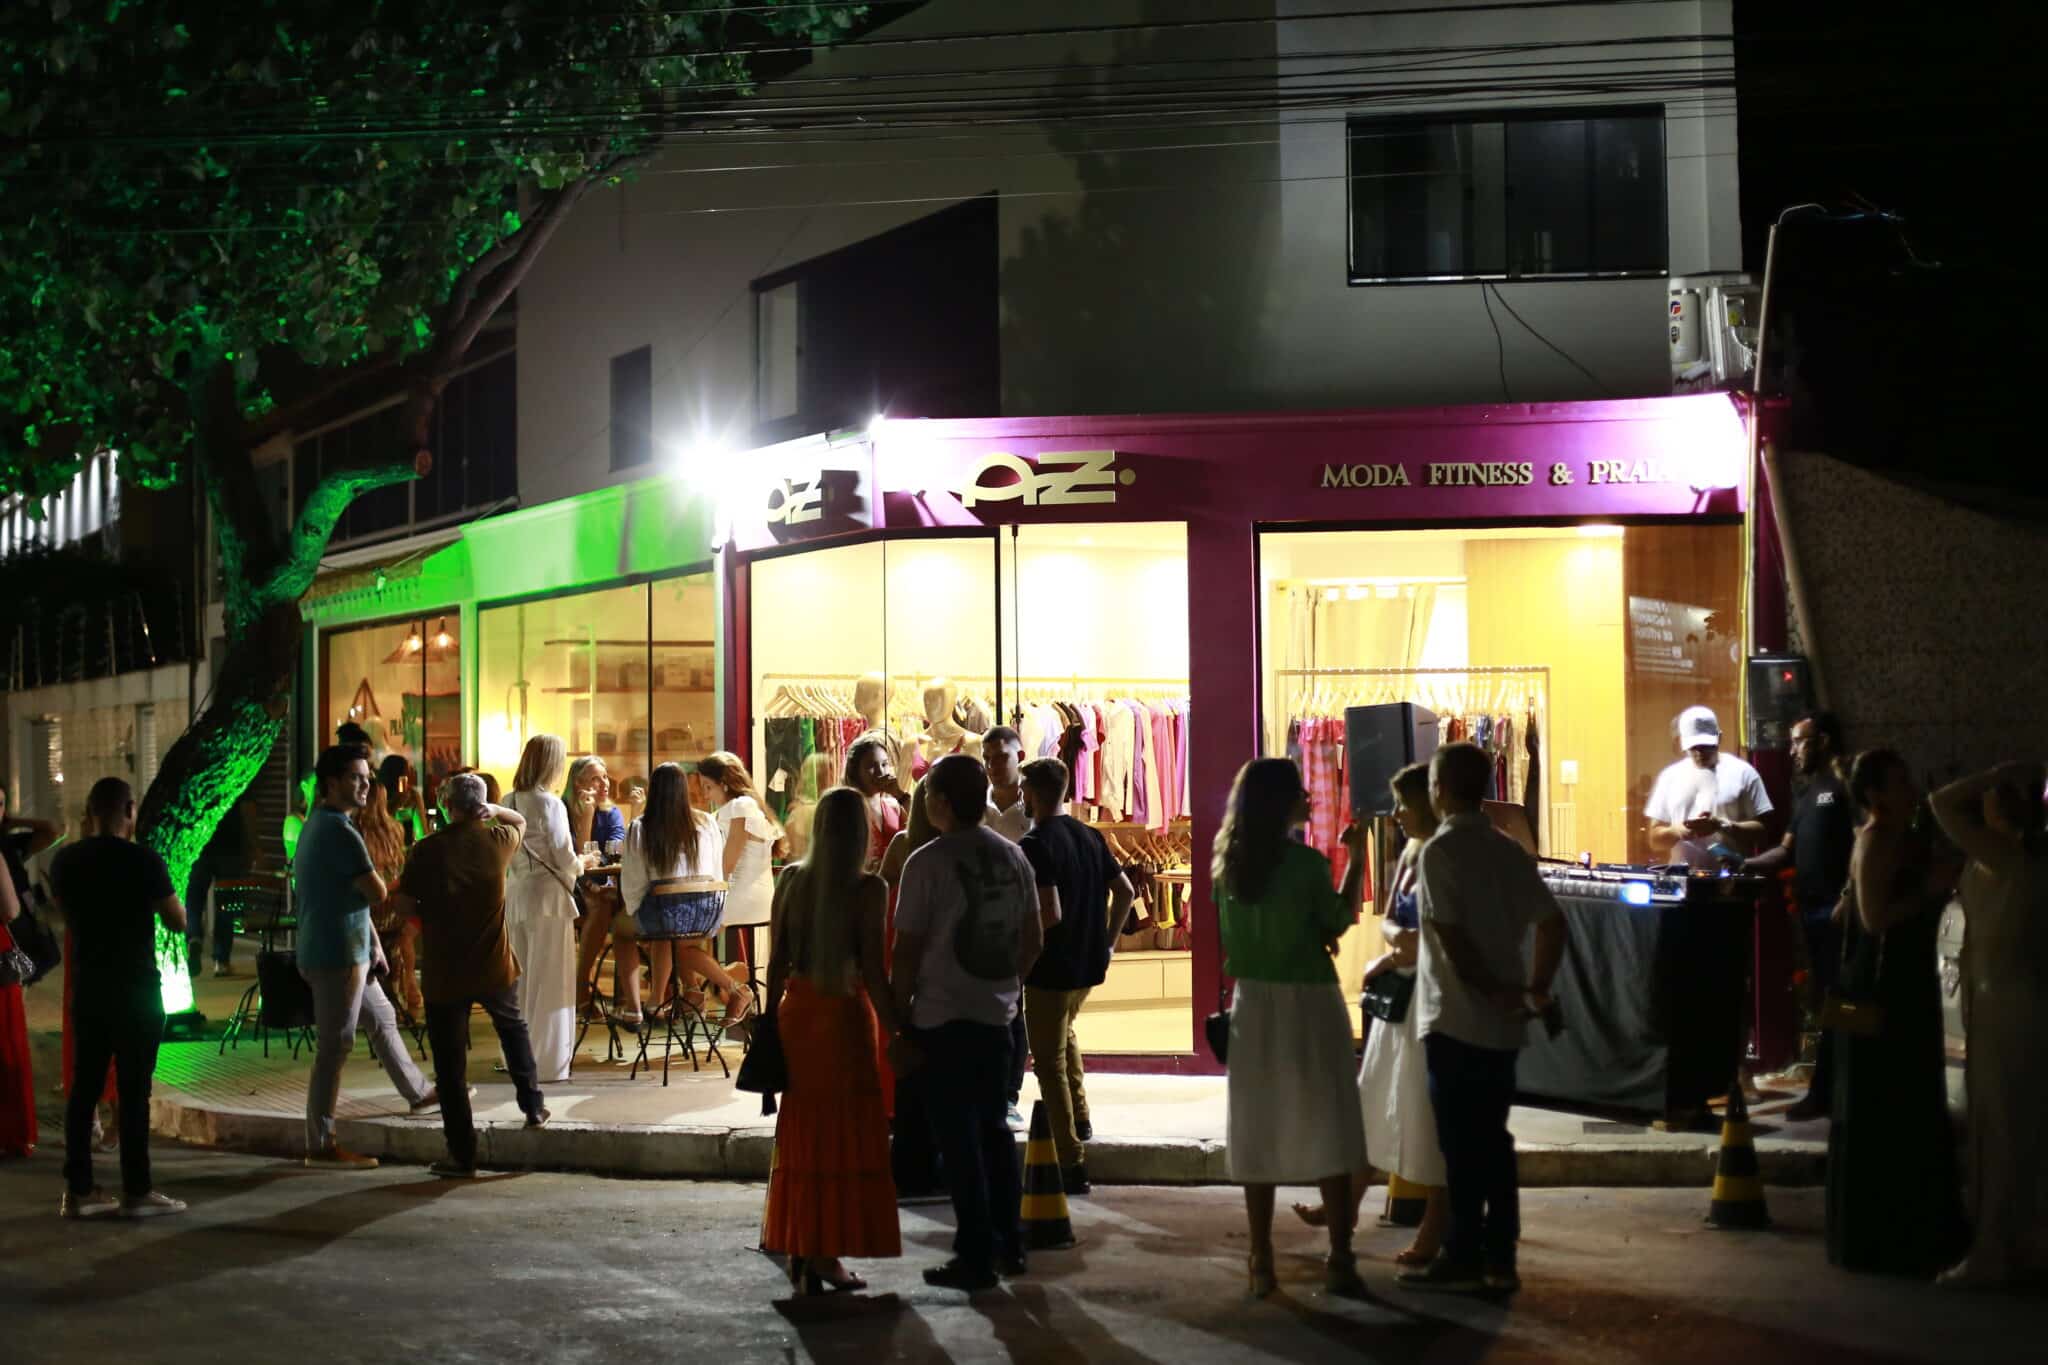 Marca famosa do ES que vende no mundo todo abre 1ª loja em Vitória; veja fotos (Foto: Kias Ramos)